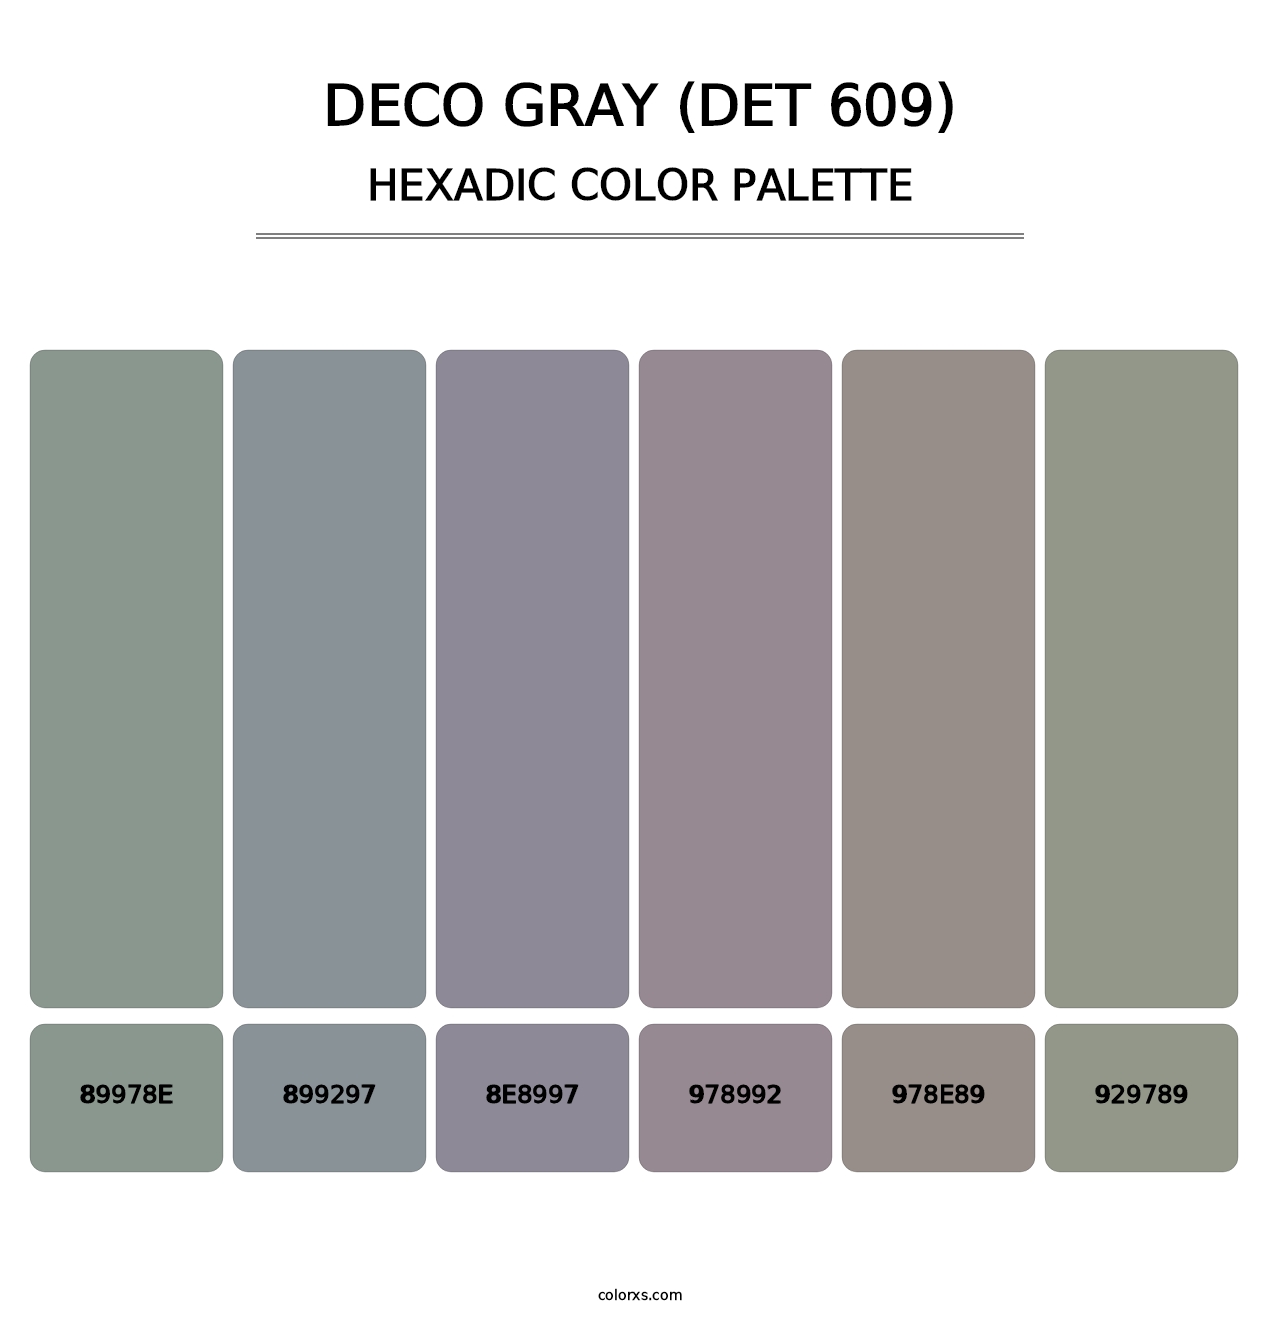 Deco Gray (DET 609) - Hexadic Color Palette